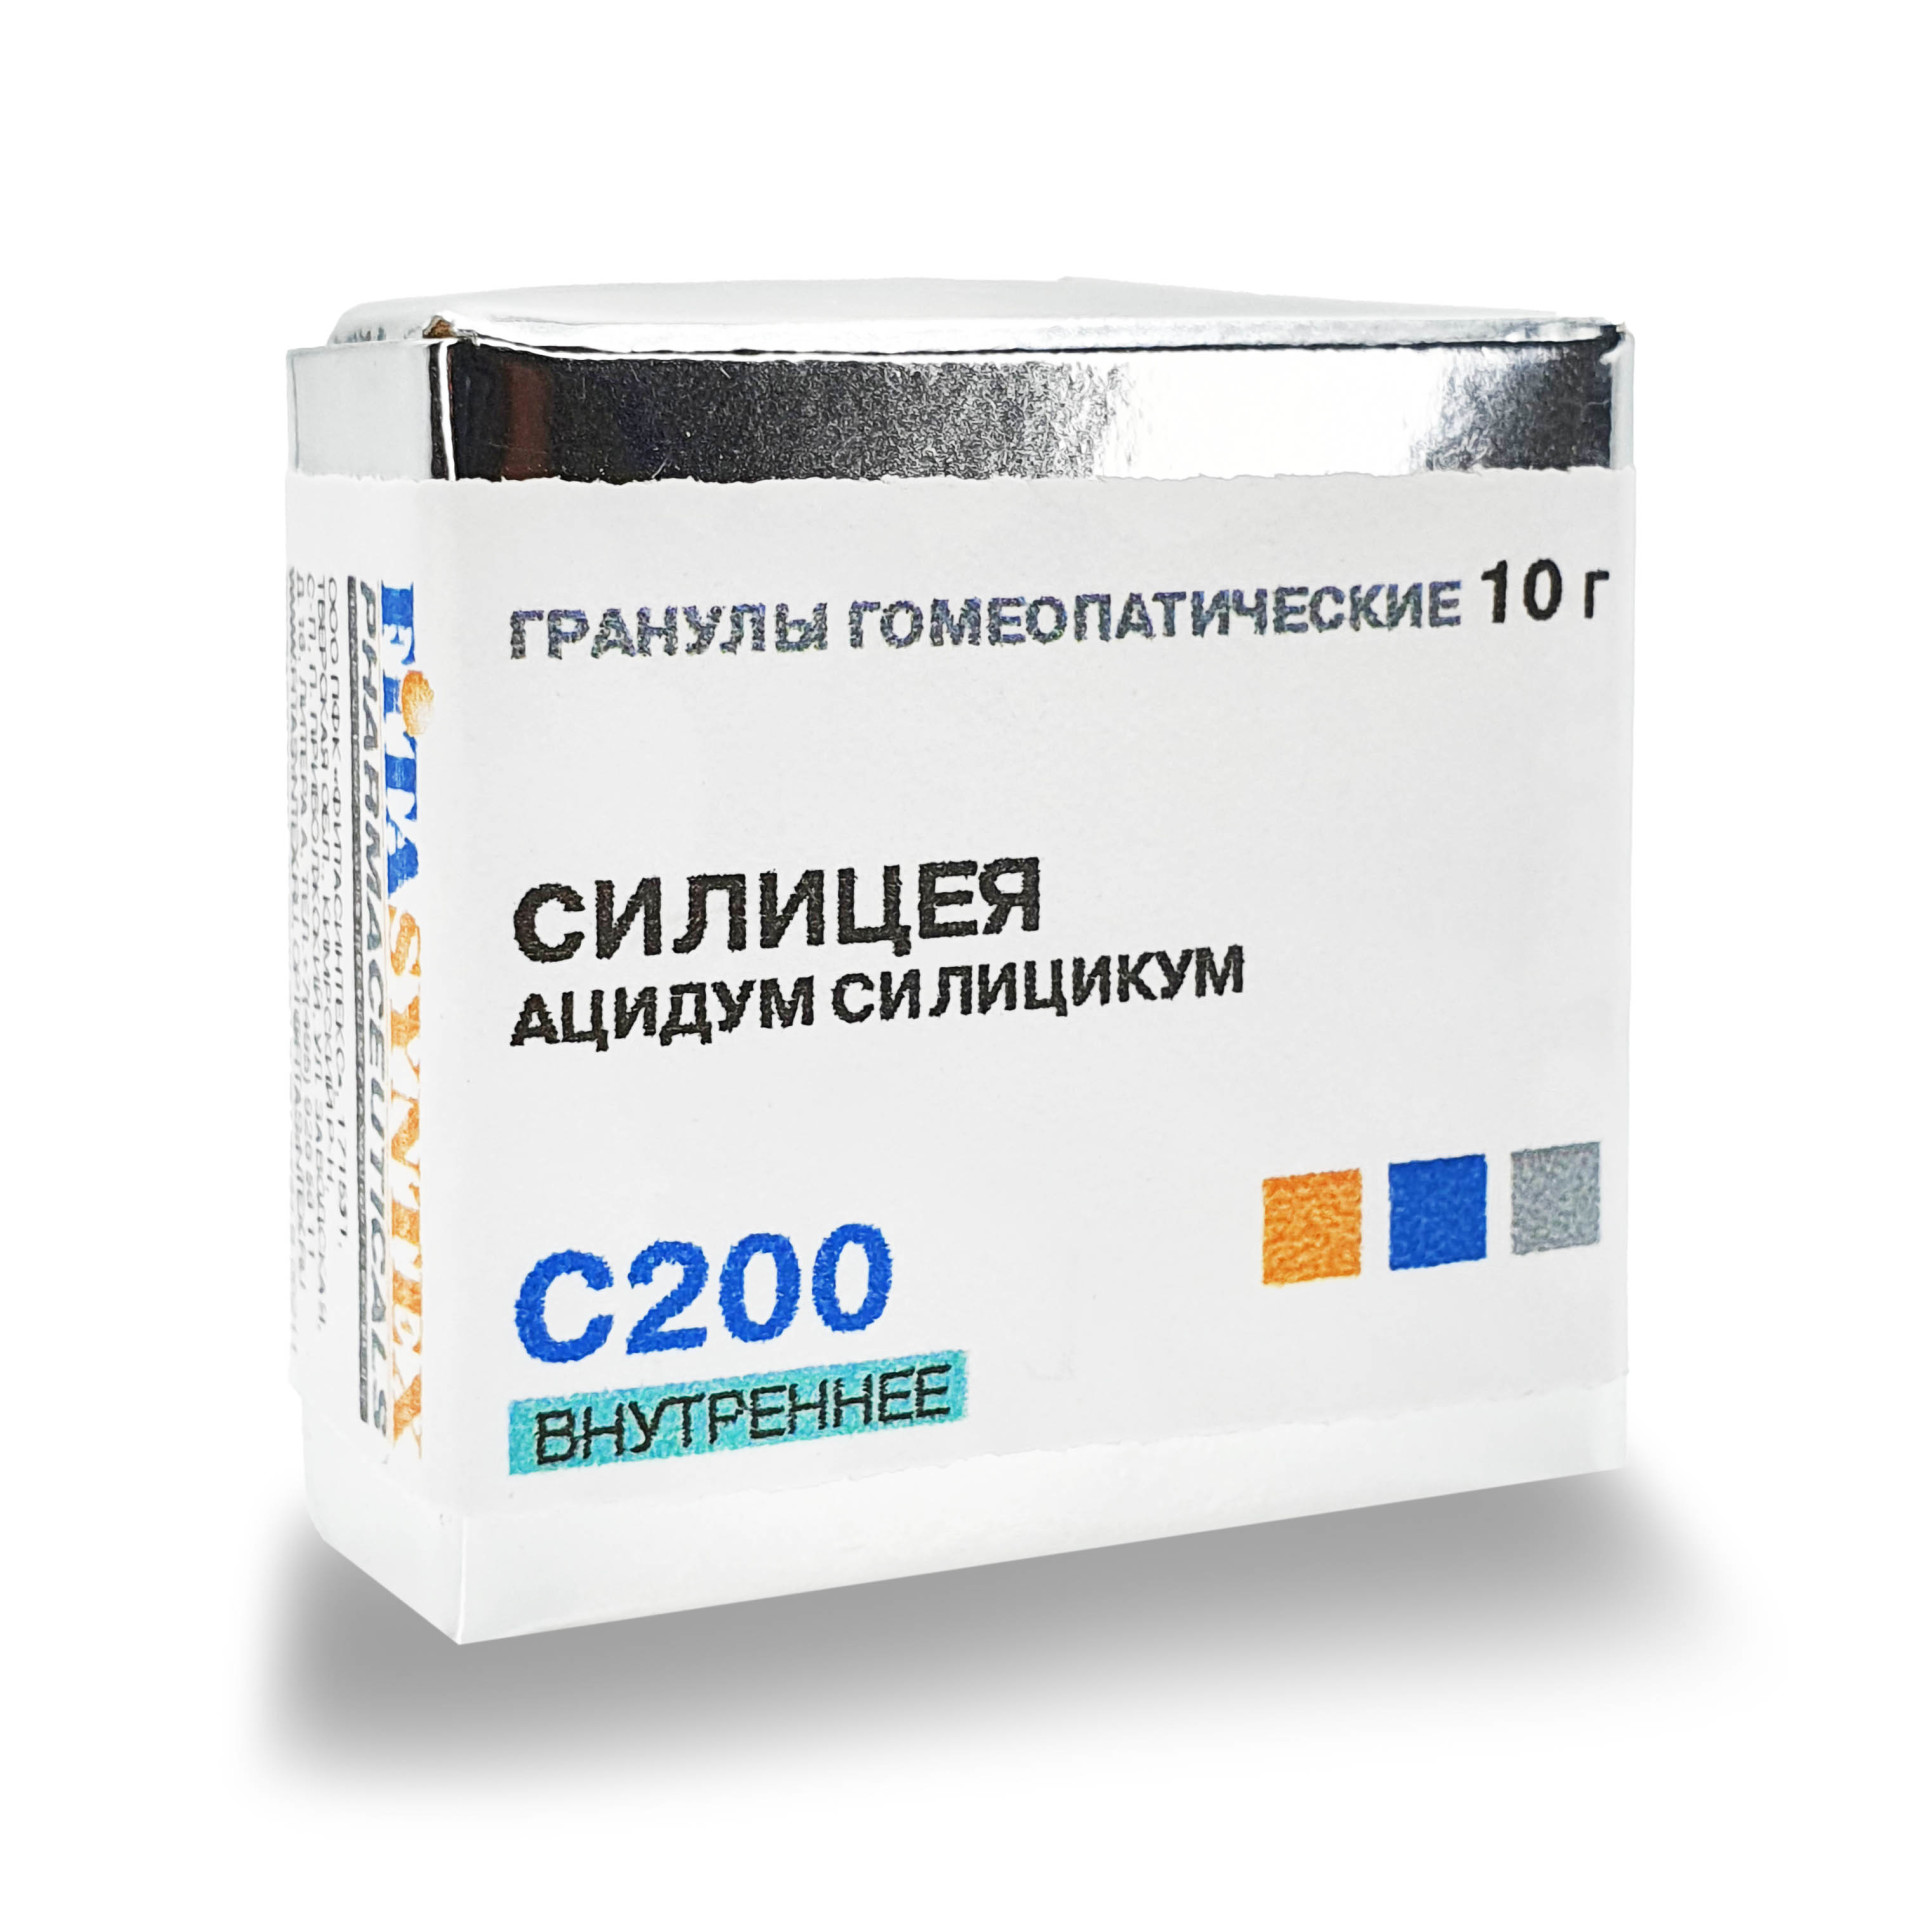 Силицея (Ацидум силицикум) С-200 гранулы 10г купить в Москве по цене от 0 рублей